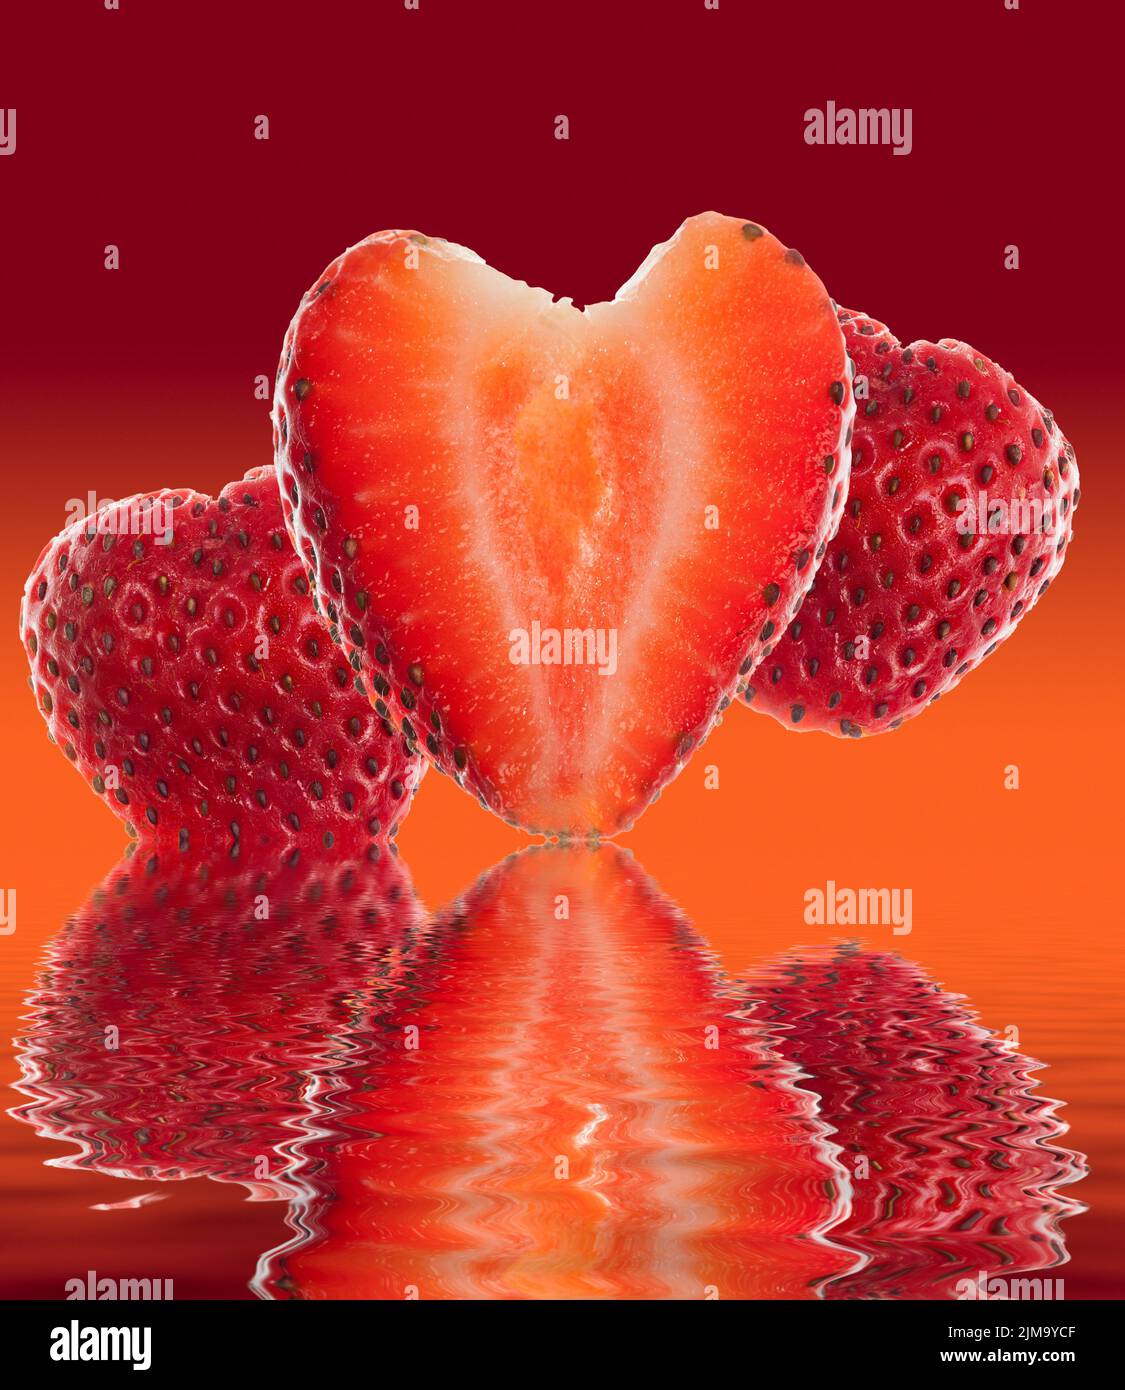 Fresa fresca cortada en forma de corazón reflejada Foto de stock